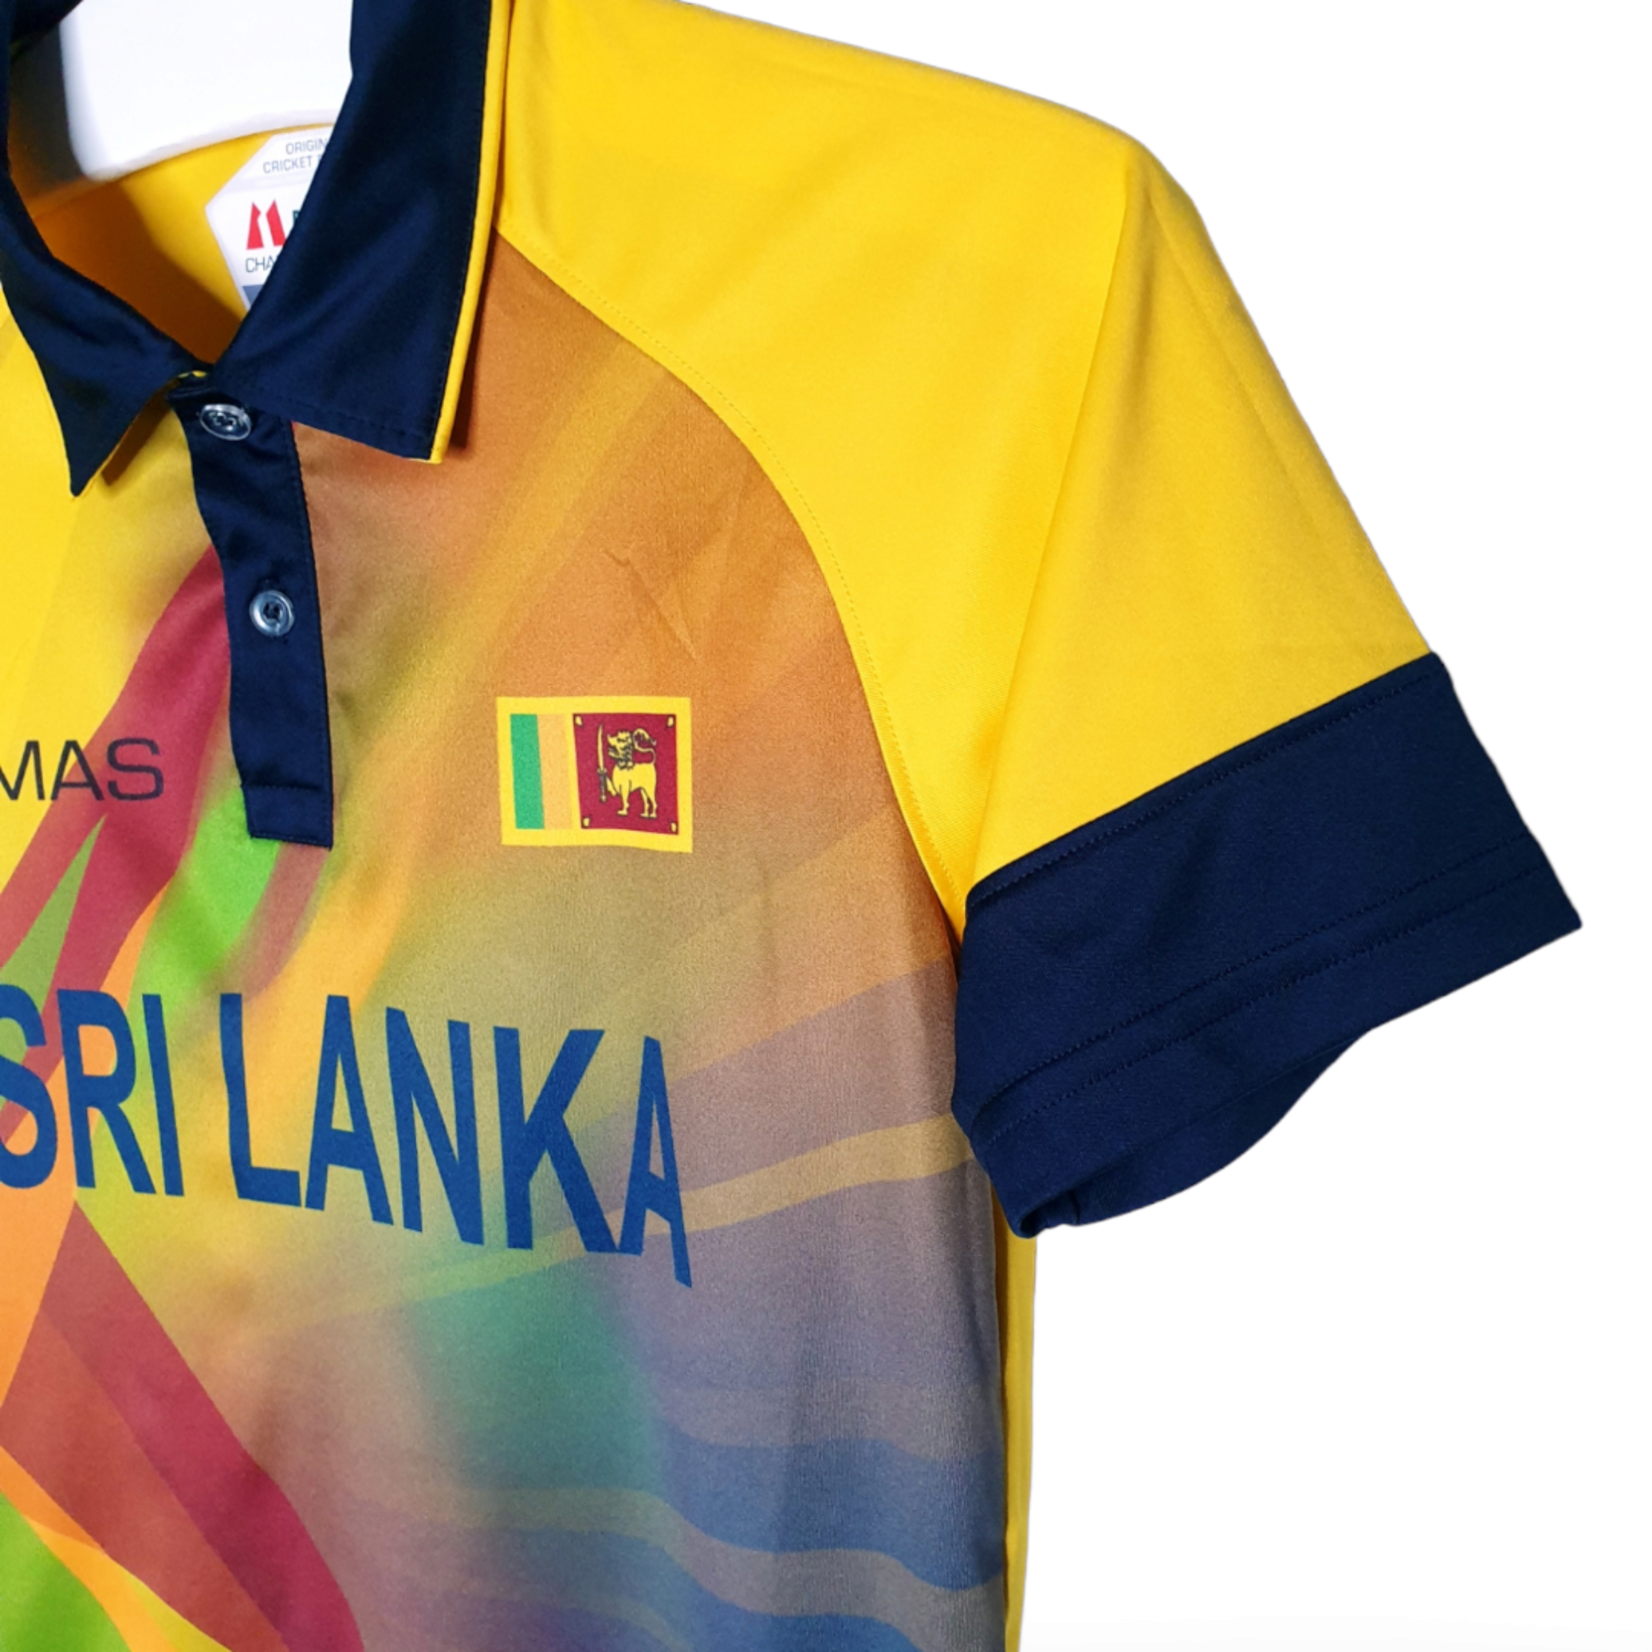 Sri Lanka T20 Official Cricket Jersey (Original MAS)